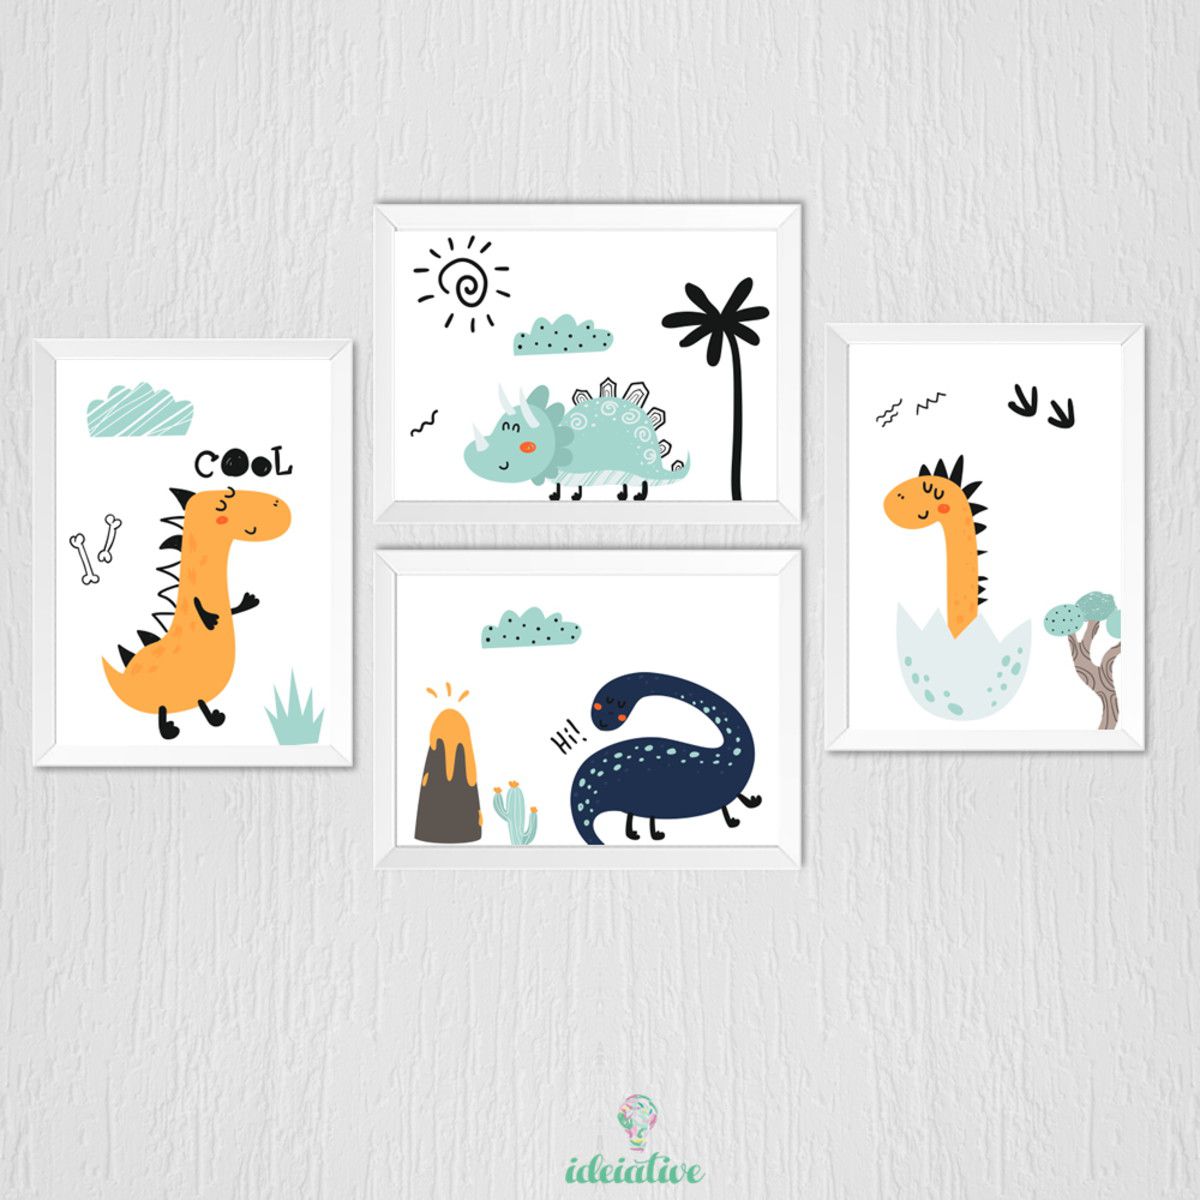 Quadro Infantil Dinossauros - Ideiative: Para quartinhos lindos de